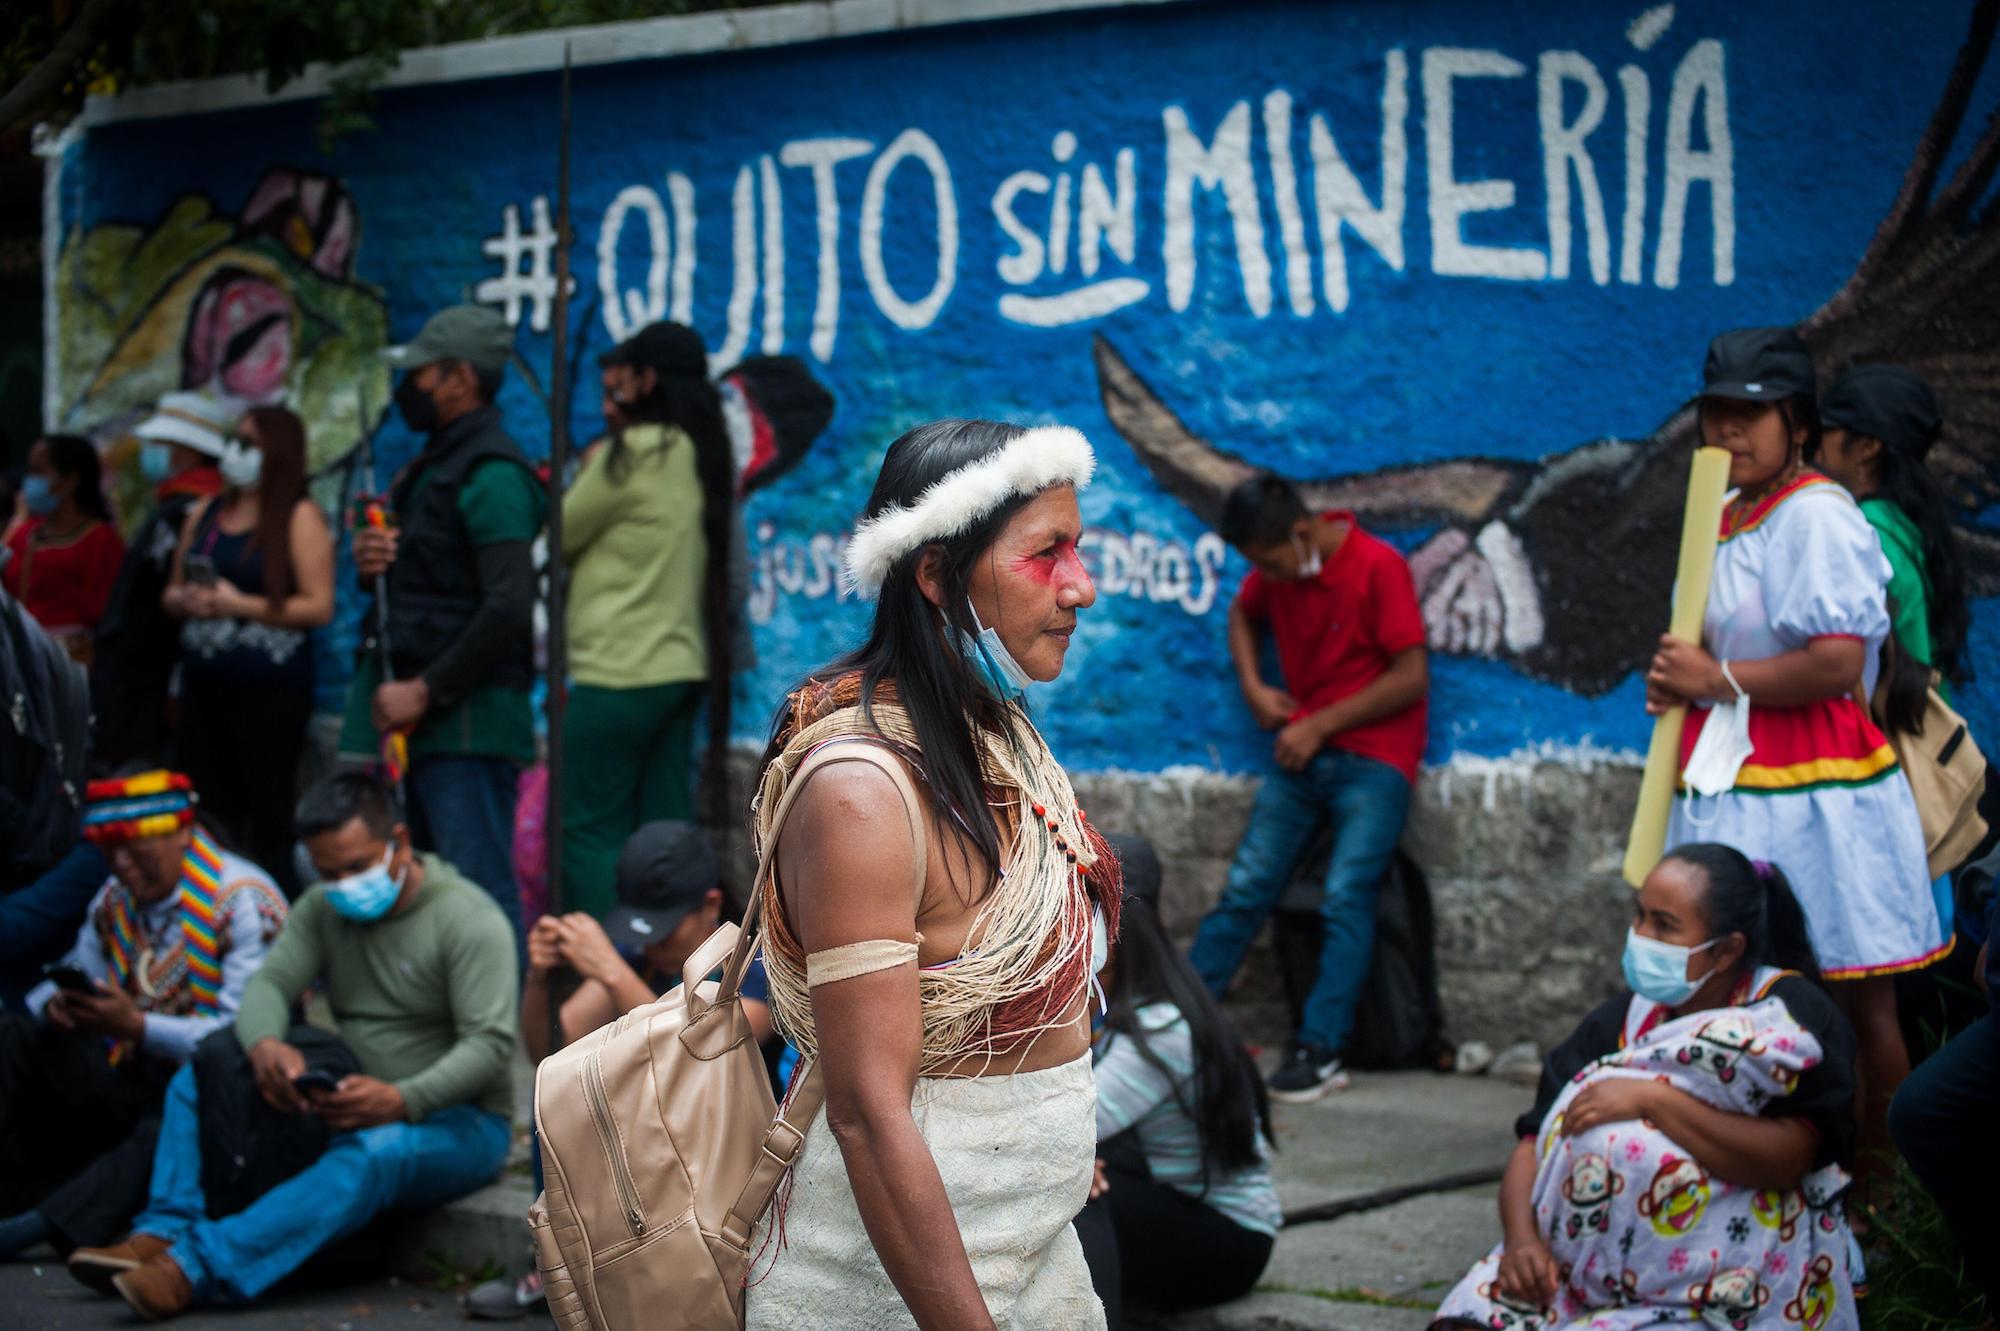 <p>#QuitoSemMineração, lê-se em muro durante protesto de indígenas em Quito, no Equador. O Acordo de Escazú busca proteger ativistas ambientais, garantindo direitos de acesso à informação, participação pública e justiça (Imagem: Juan Diego Montenegro / Alamy)</p>